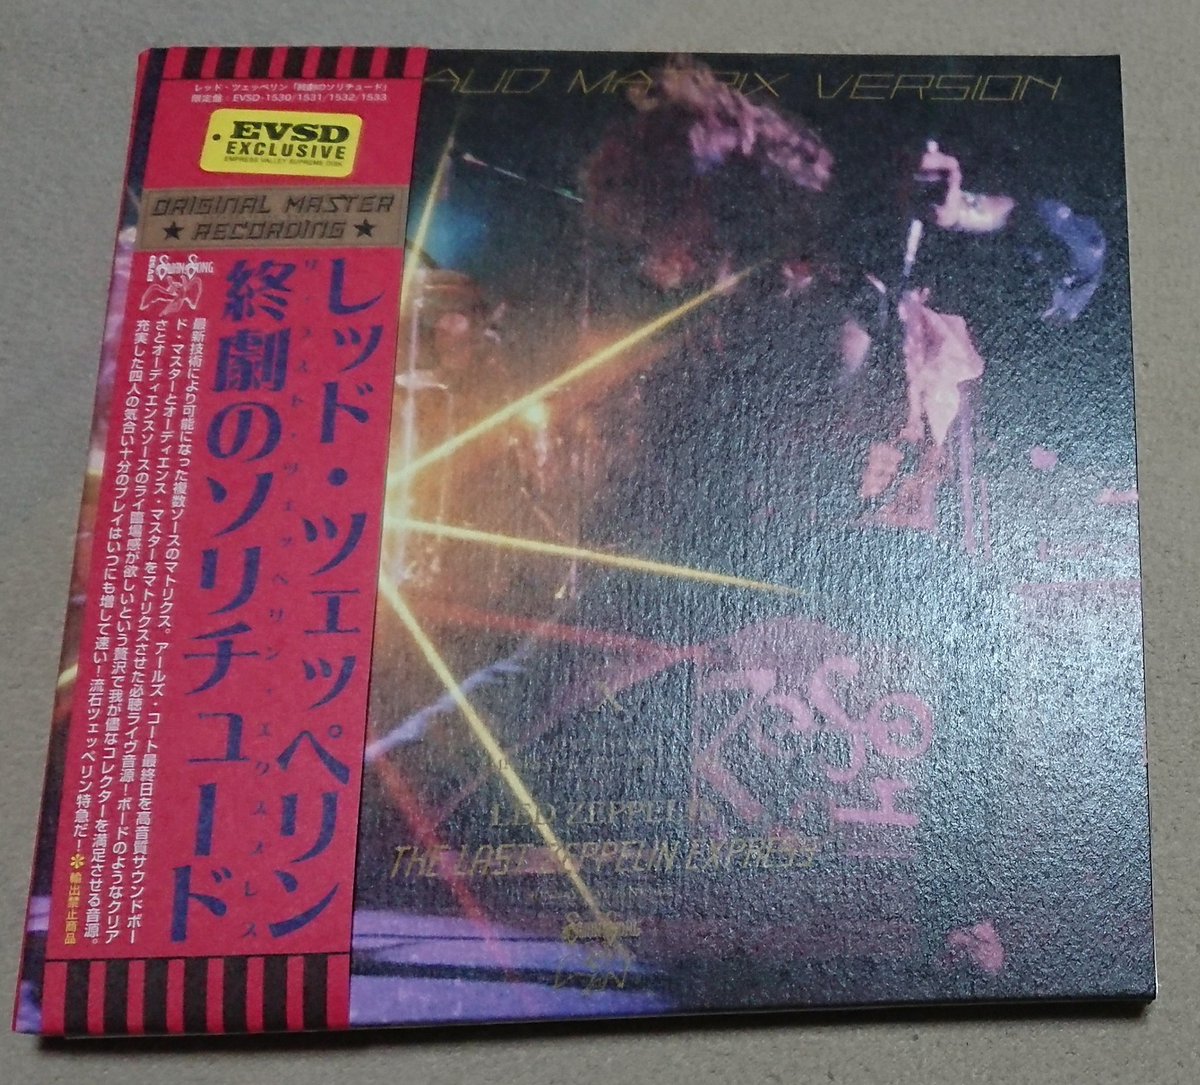 ☆オンラインストア本物☆ Led Zeppelin 8CD 終劇のソリチュード